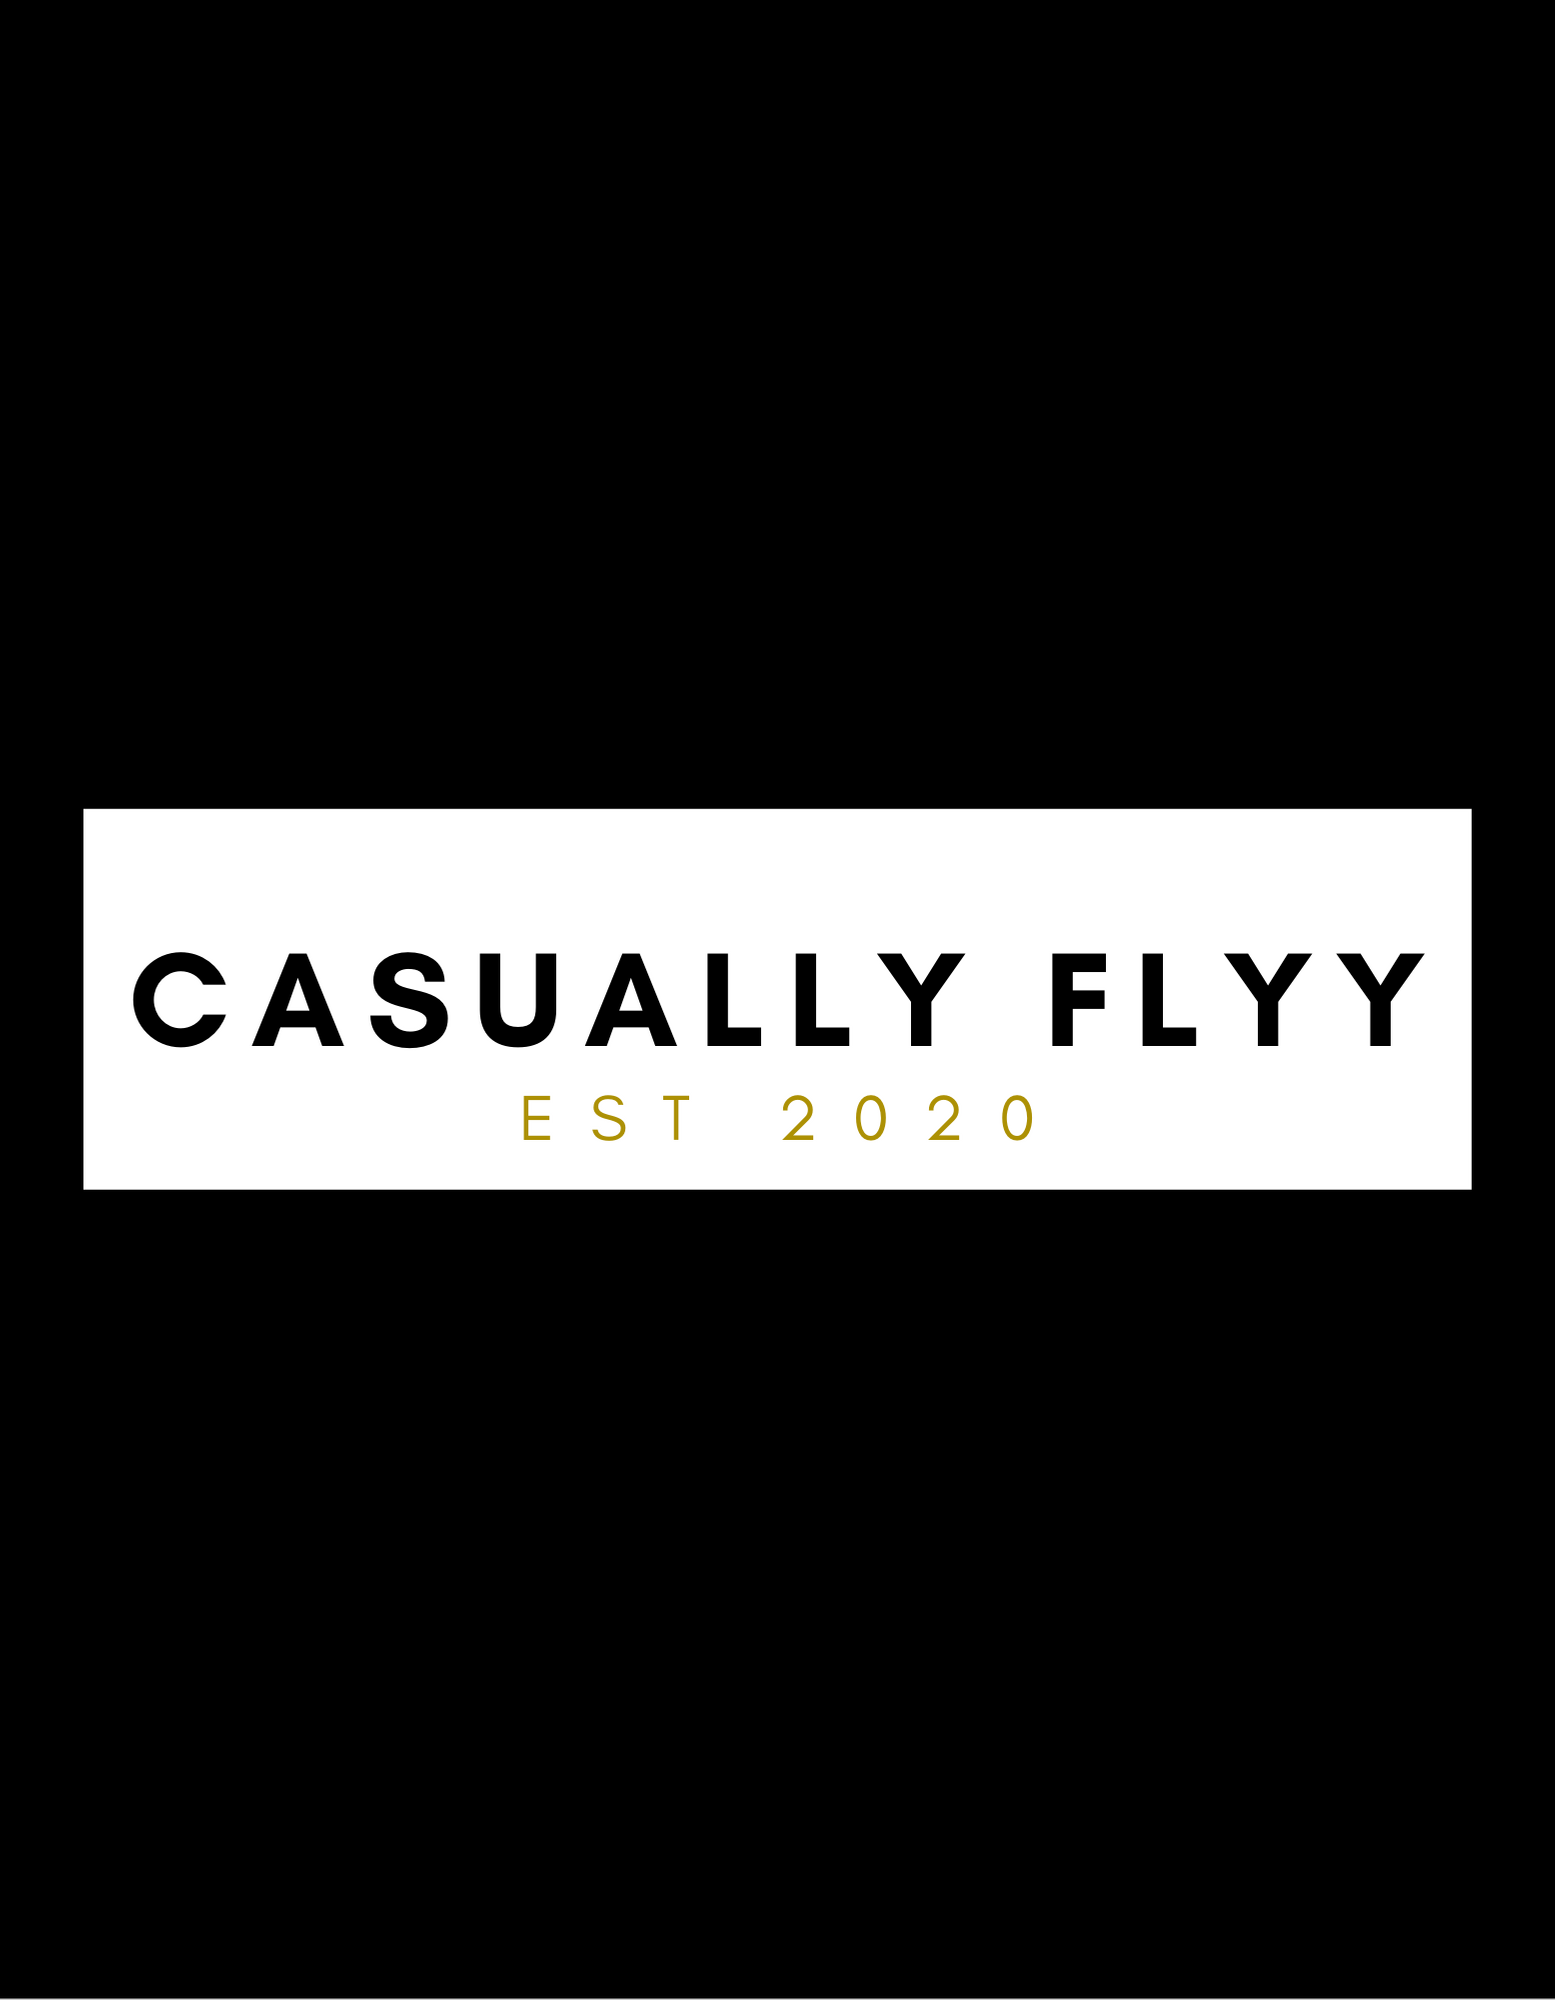 Casually Flyy